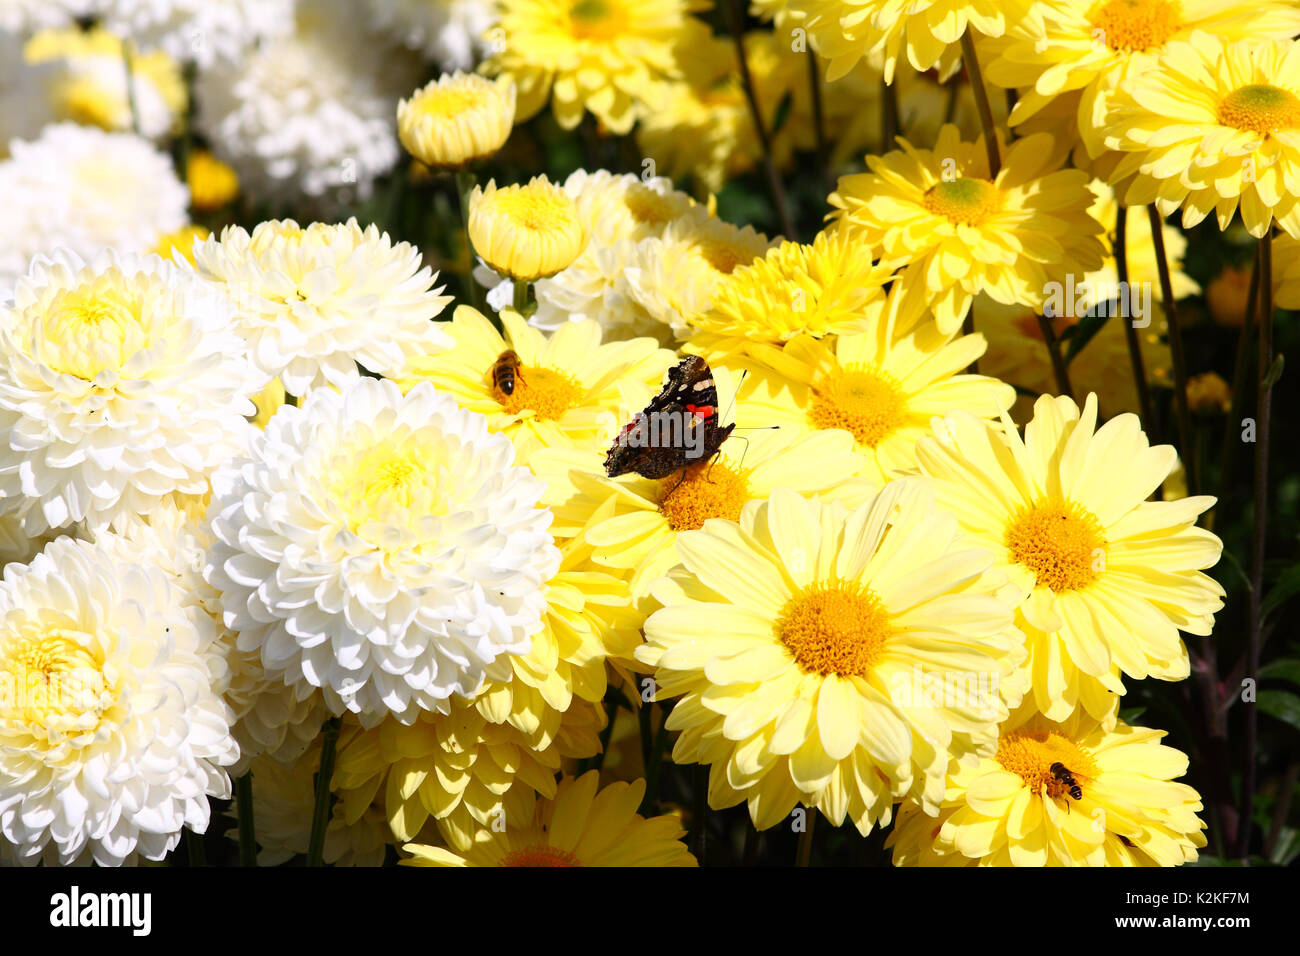 Leeds, UK. Août 31, 2017. Météo britannique. Les insectes pollinisateurs ont occupé les belles fleurs du Golden Acre Park à Leeds, West Yorkshire quand le soleil s'est montré cet après-midi. Prises le 31 août 2017. Credit : Victoria Gardner/Alamy Live News Banque D'Images